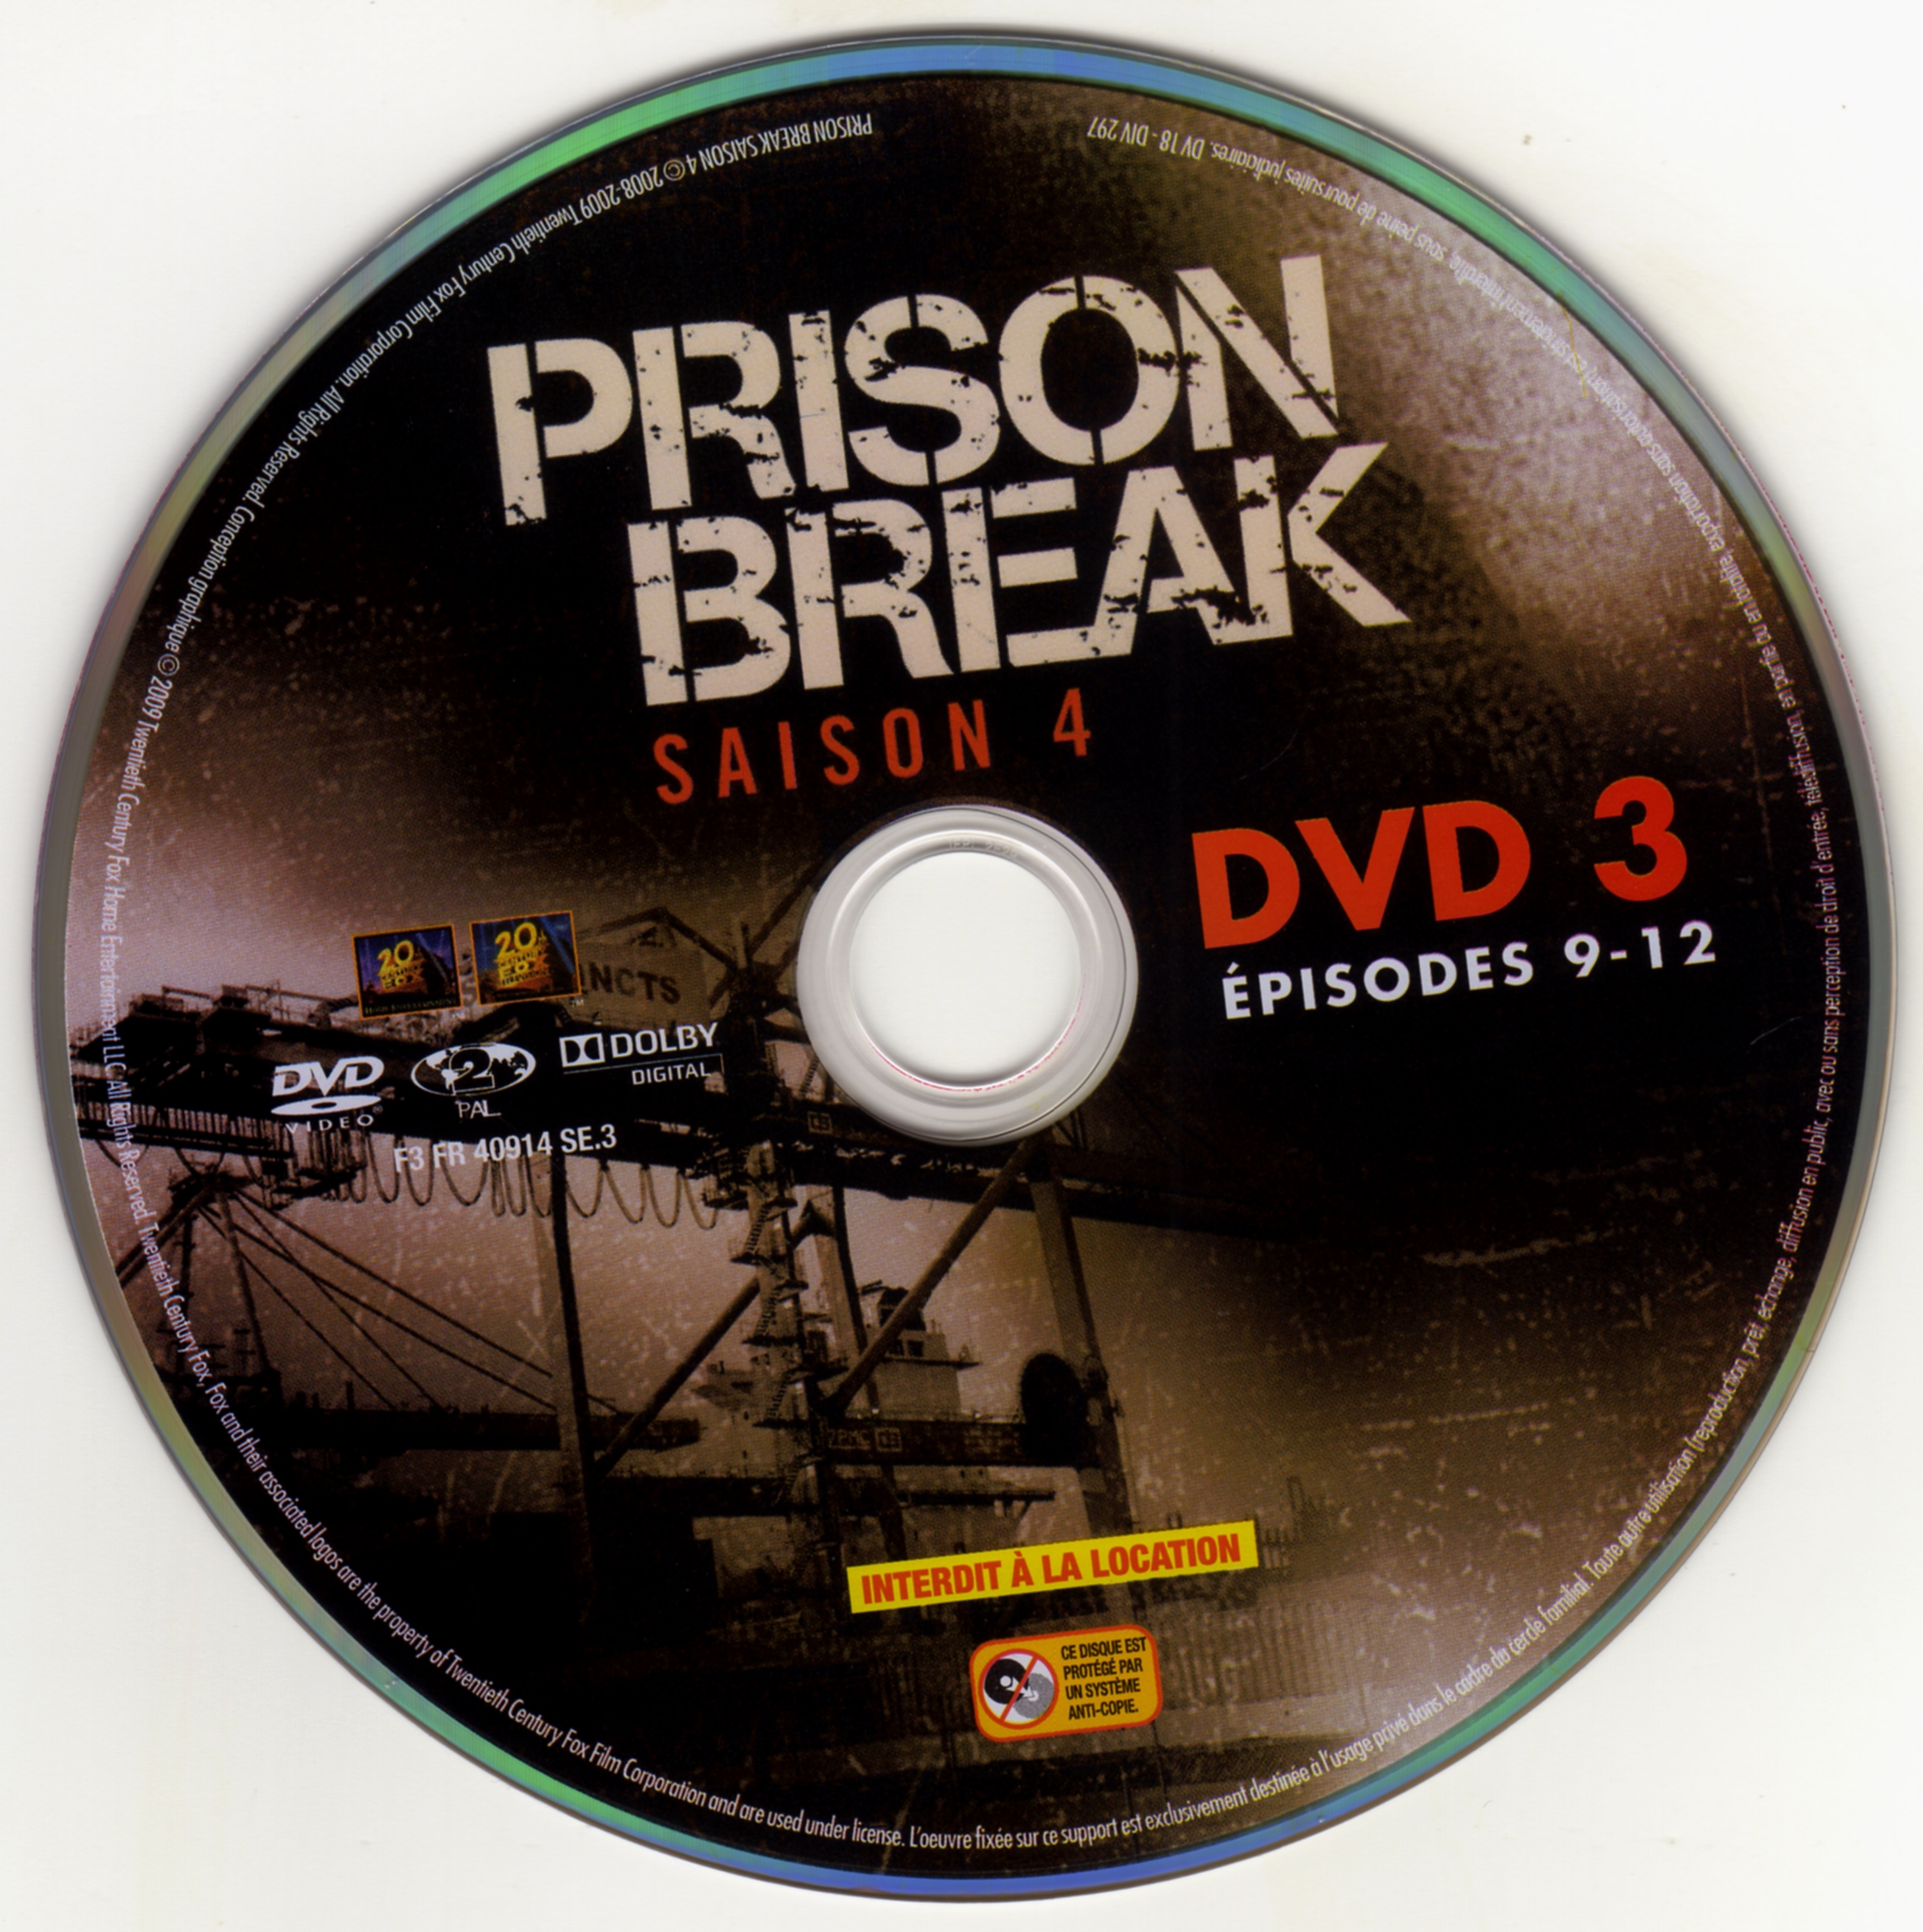 Prison break saison 4 DVD 3